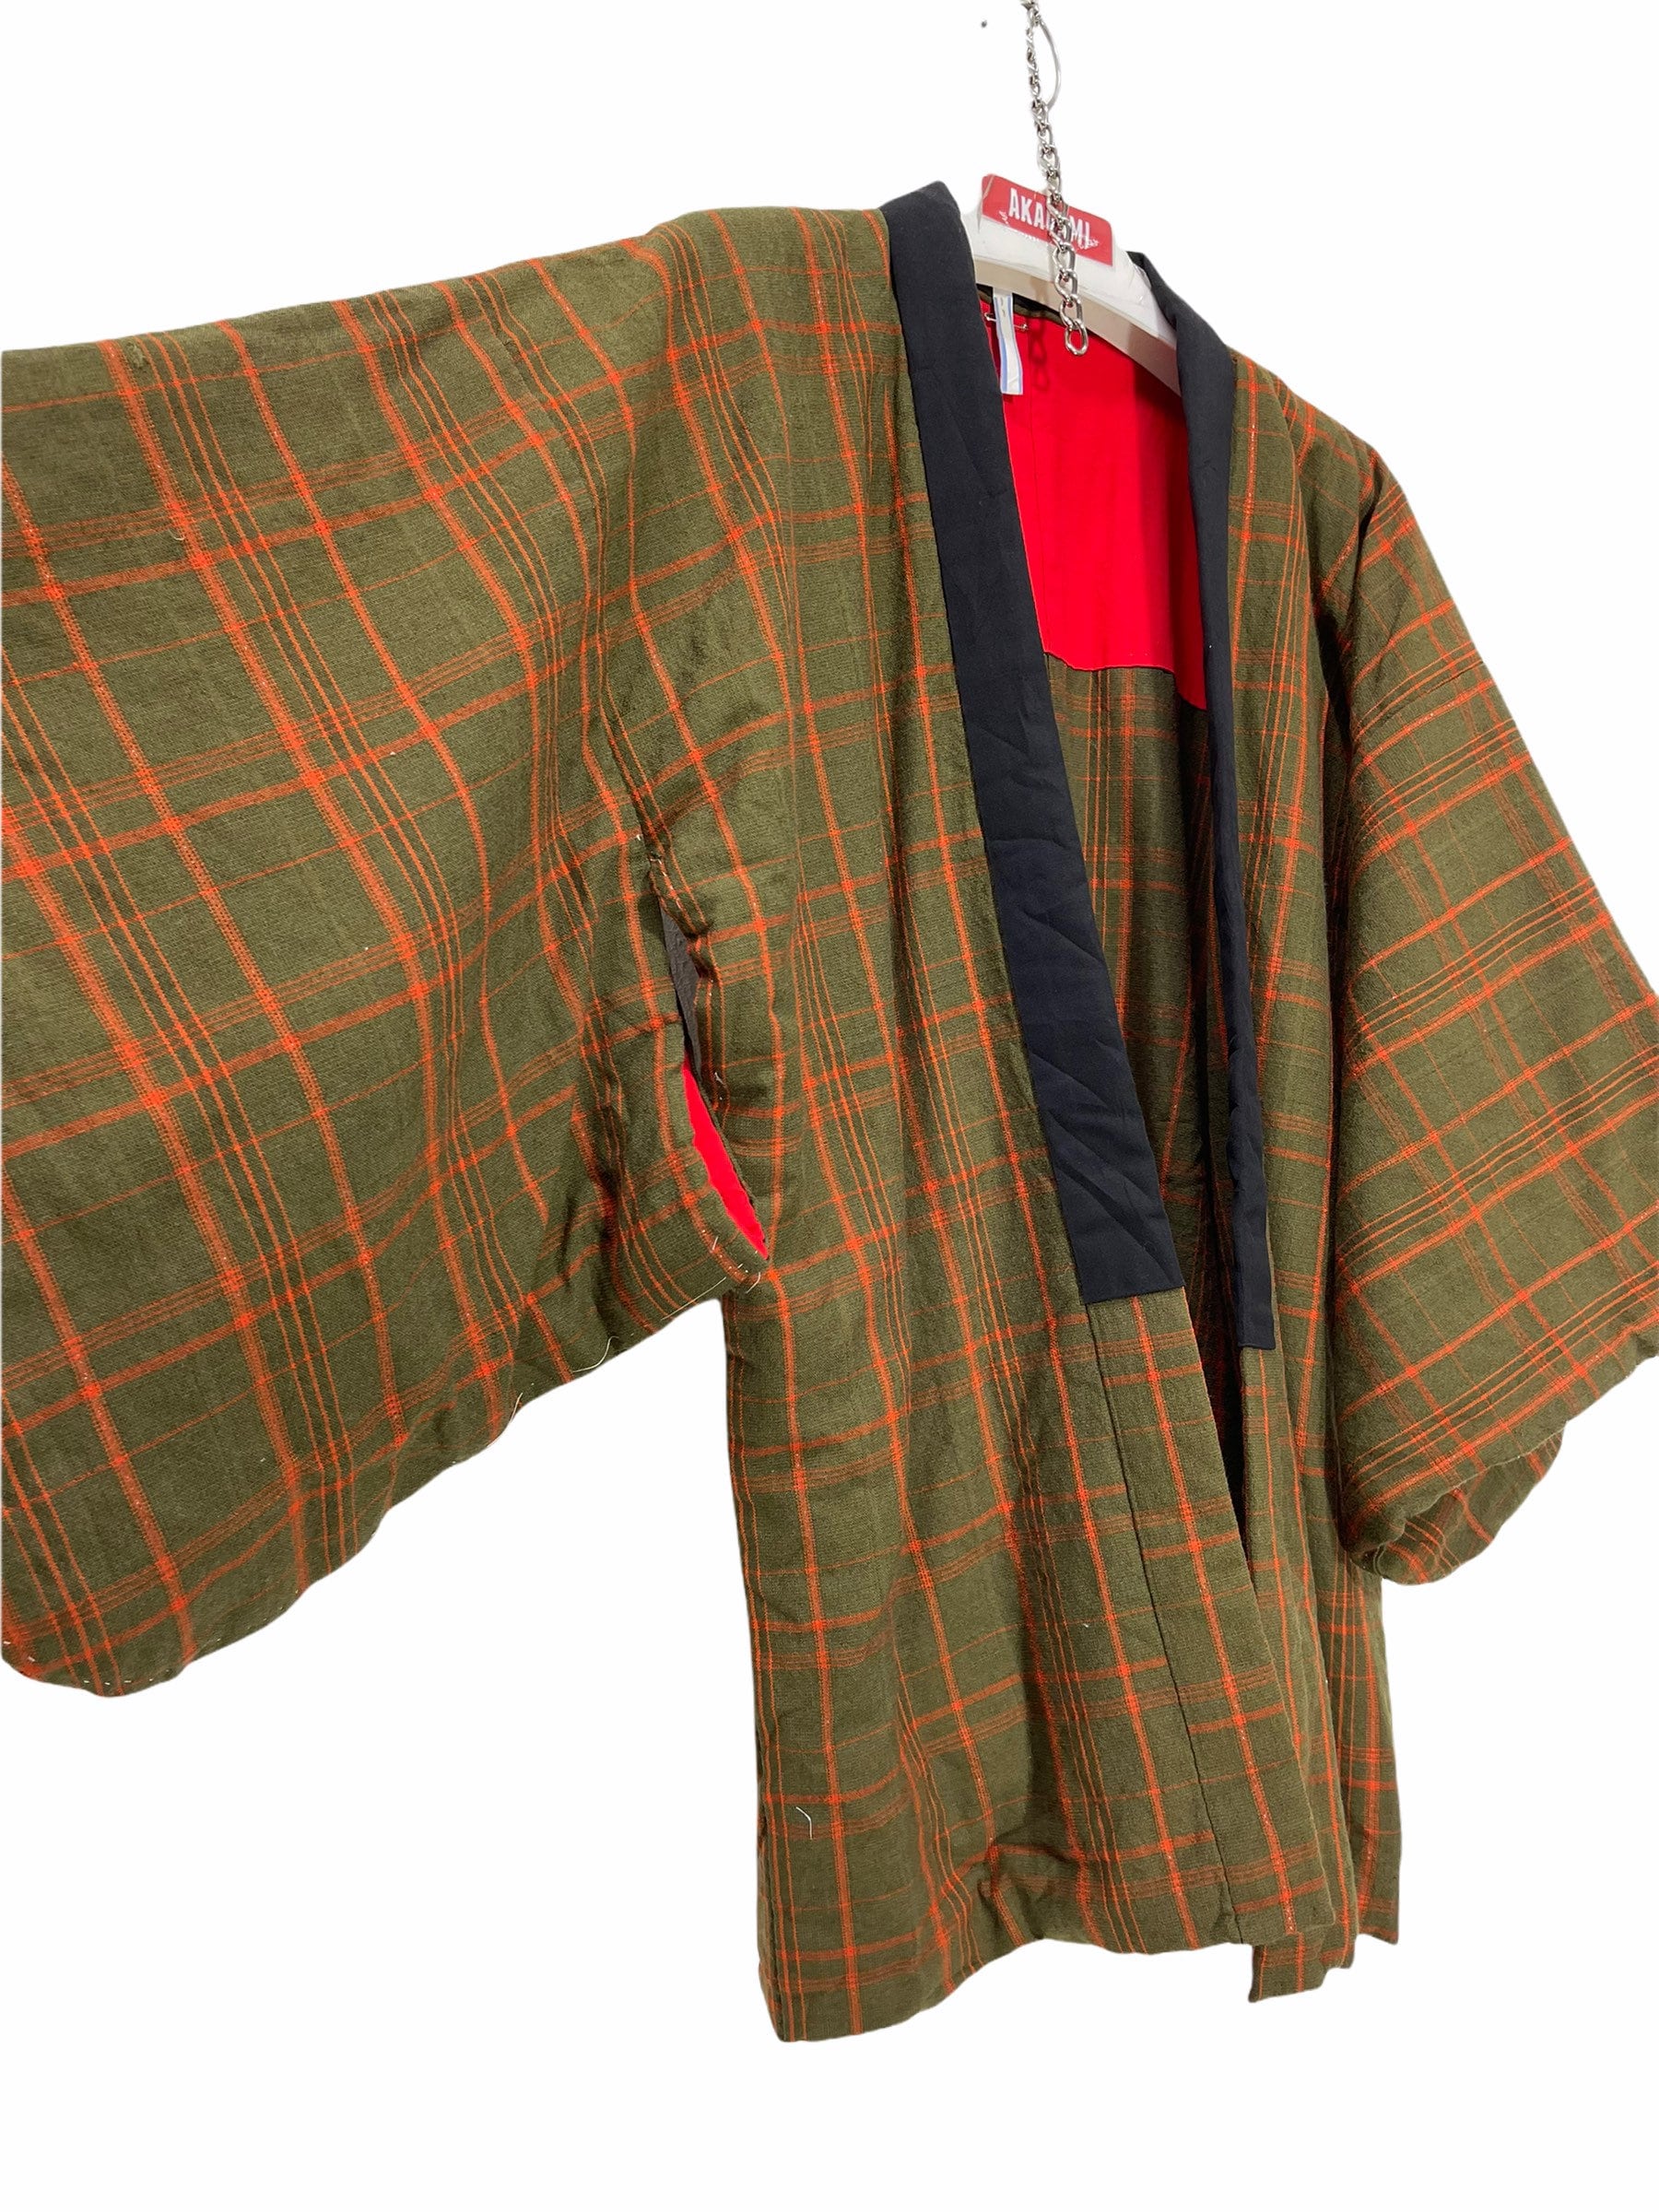 Hergestellt in Japan Vintage Hanten Wolle Jacke Wattierte Karo Muster Handgefertigte Kimono Robe Warme Winterjacke von DONPACINO